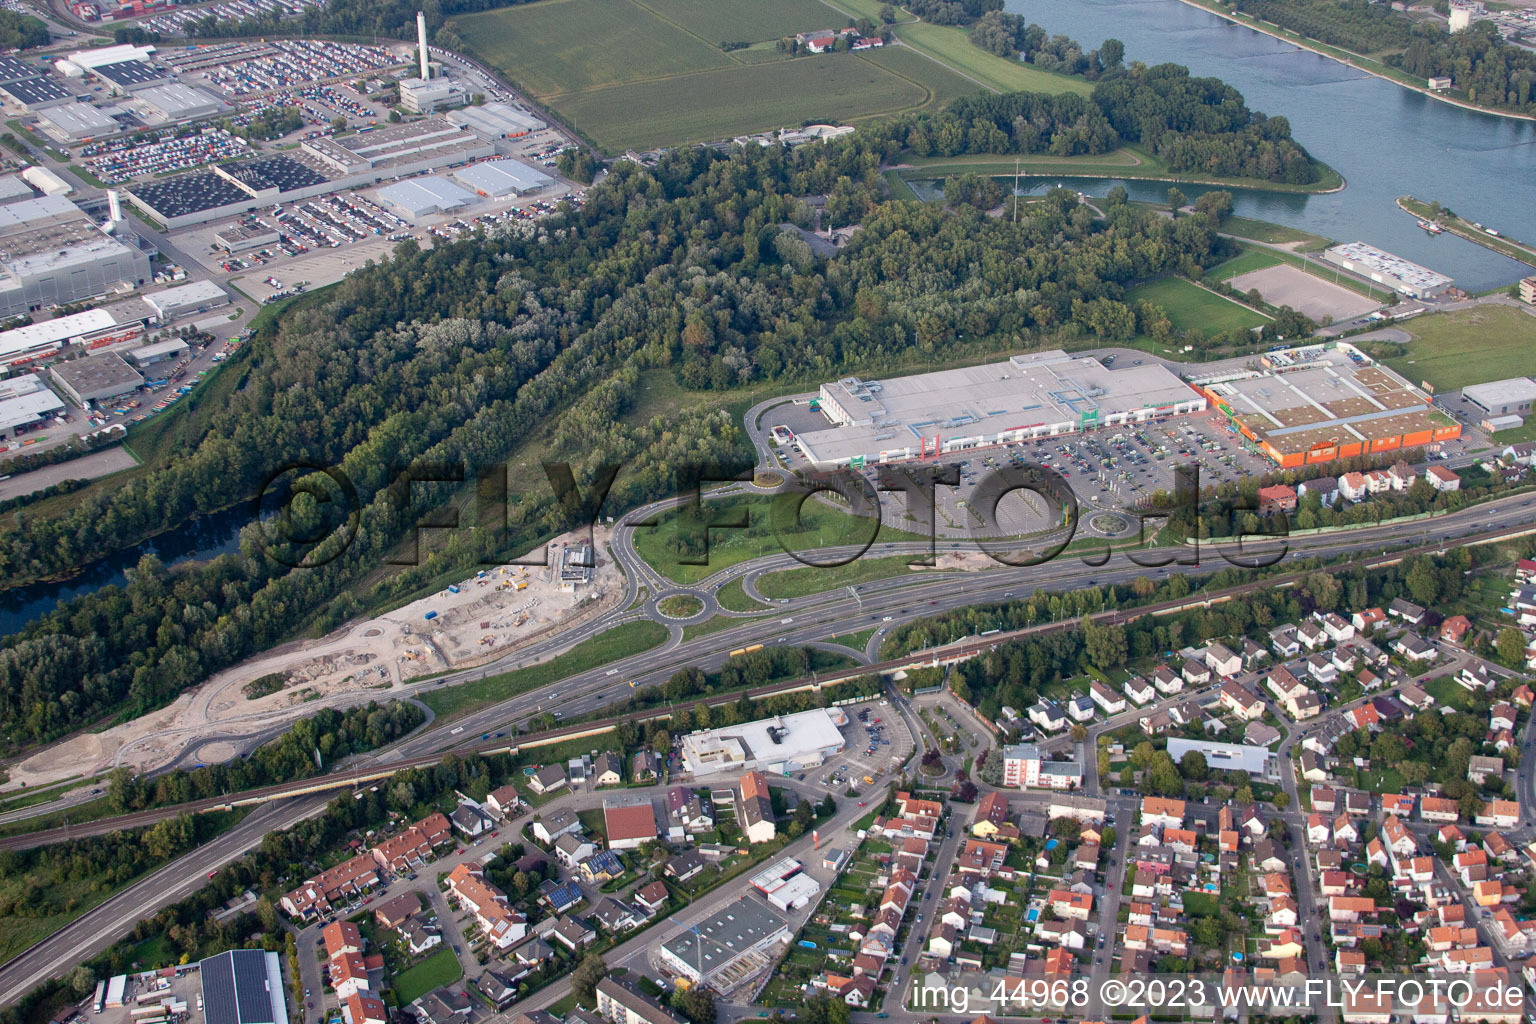 Photographie aérienne de Centre Maximilien II à le quartier Maximiliansau in Wörth am Rhein dans le département Rhénanie-Palatinat, Allemagne